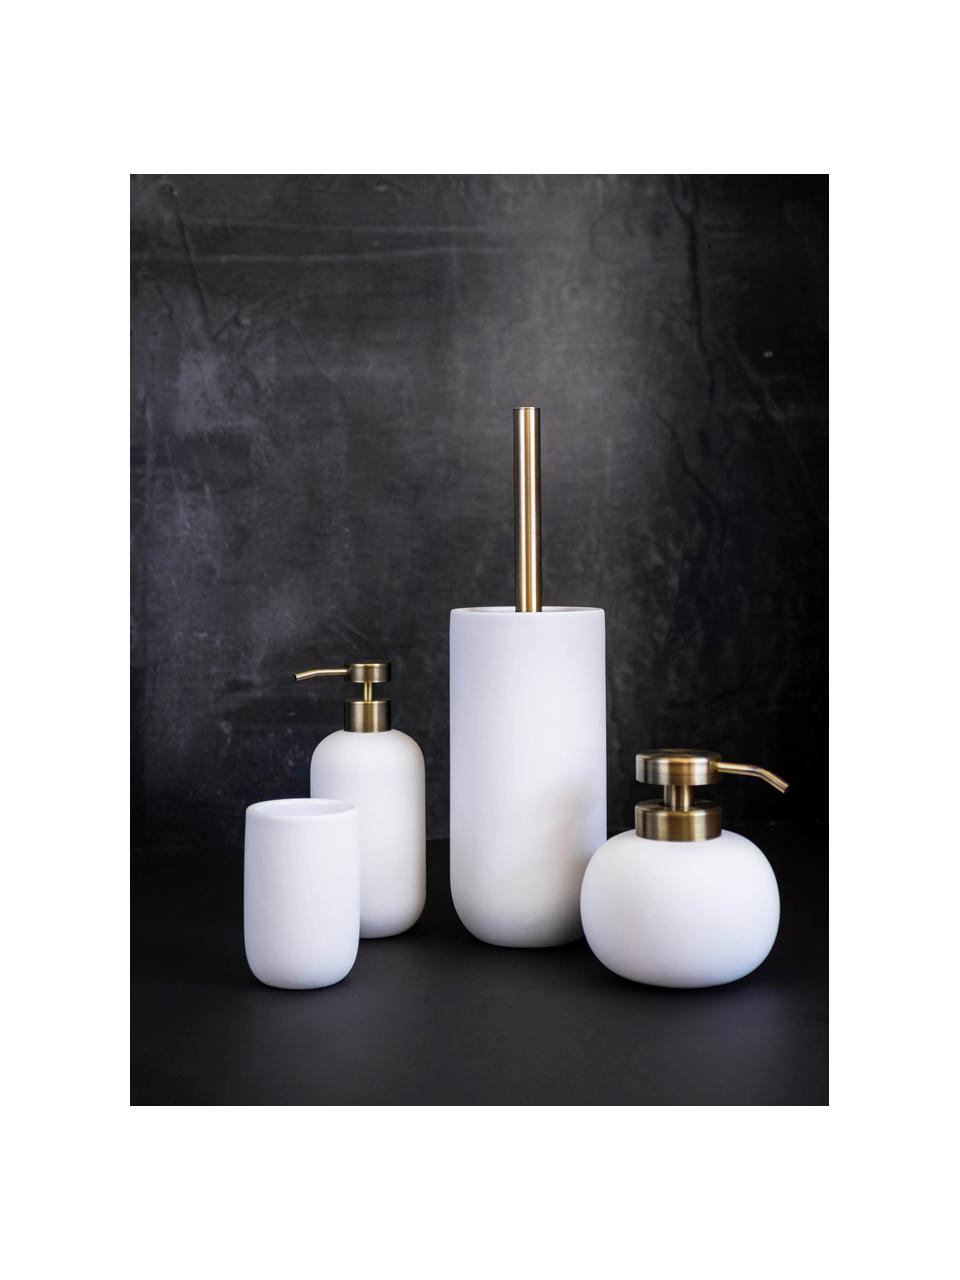 Toilettenbürste Lotus mit Keramik-Behälter, Behälter: Keramik, Griff: Metall, beschichtet, Weiß, Goldfarben, Ø 10 x H 21 cm